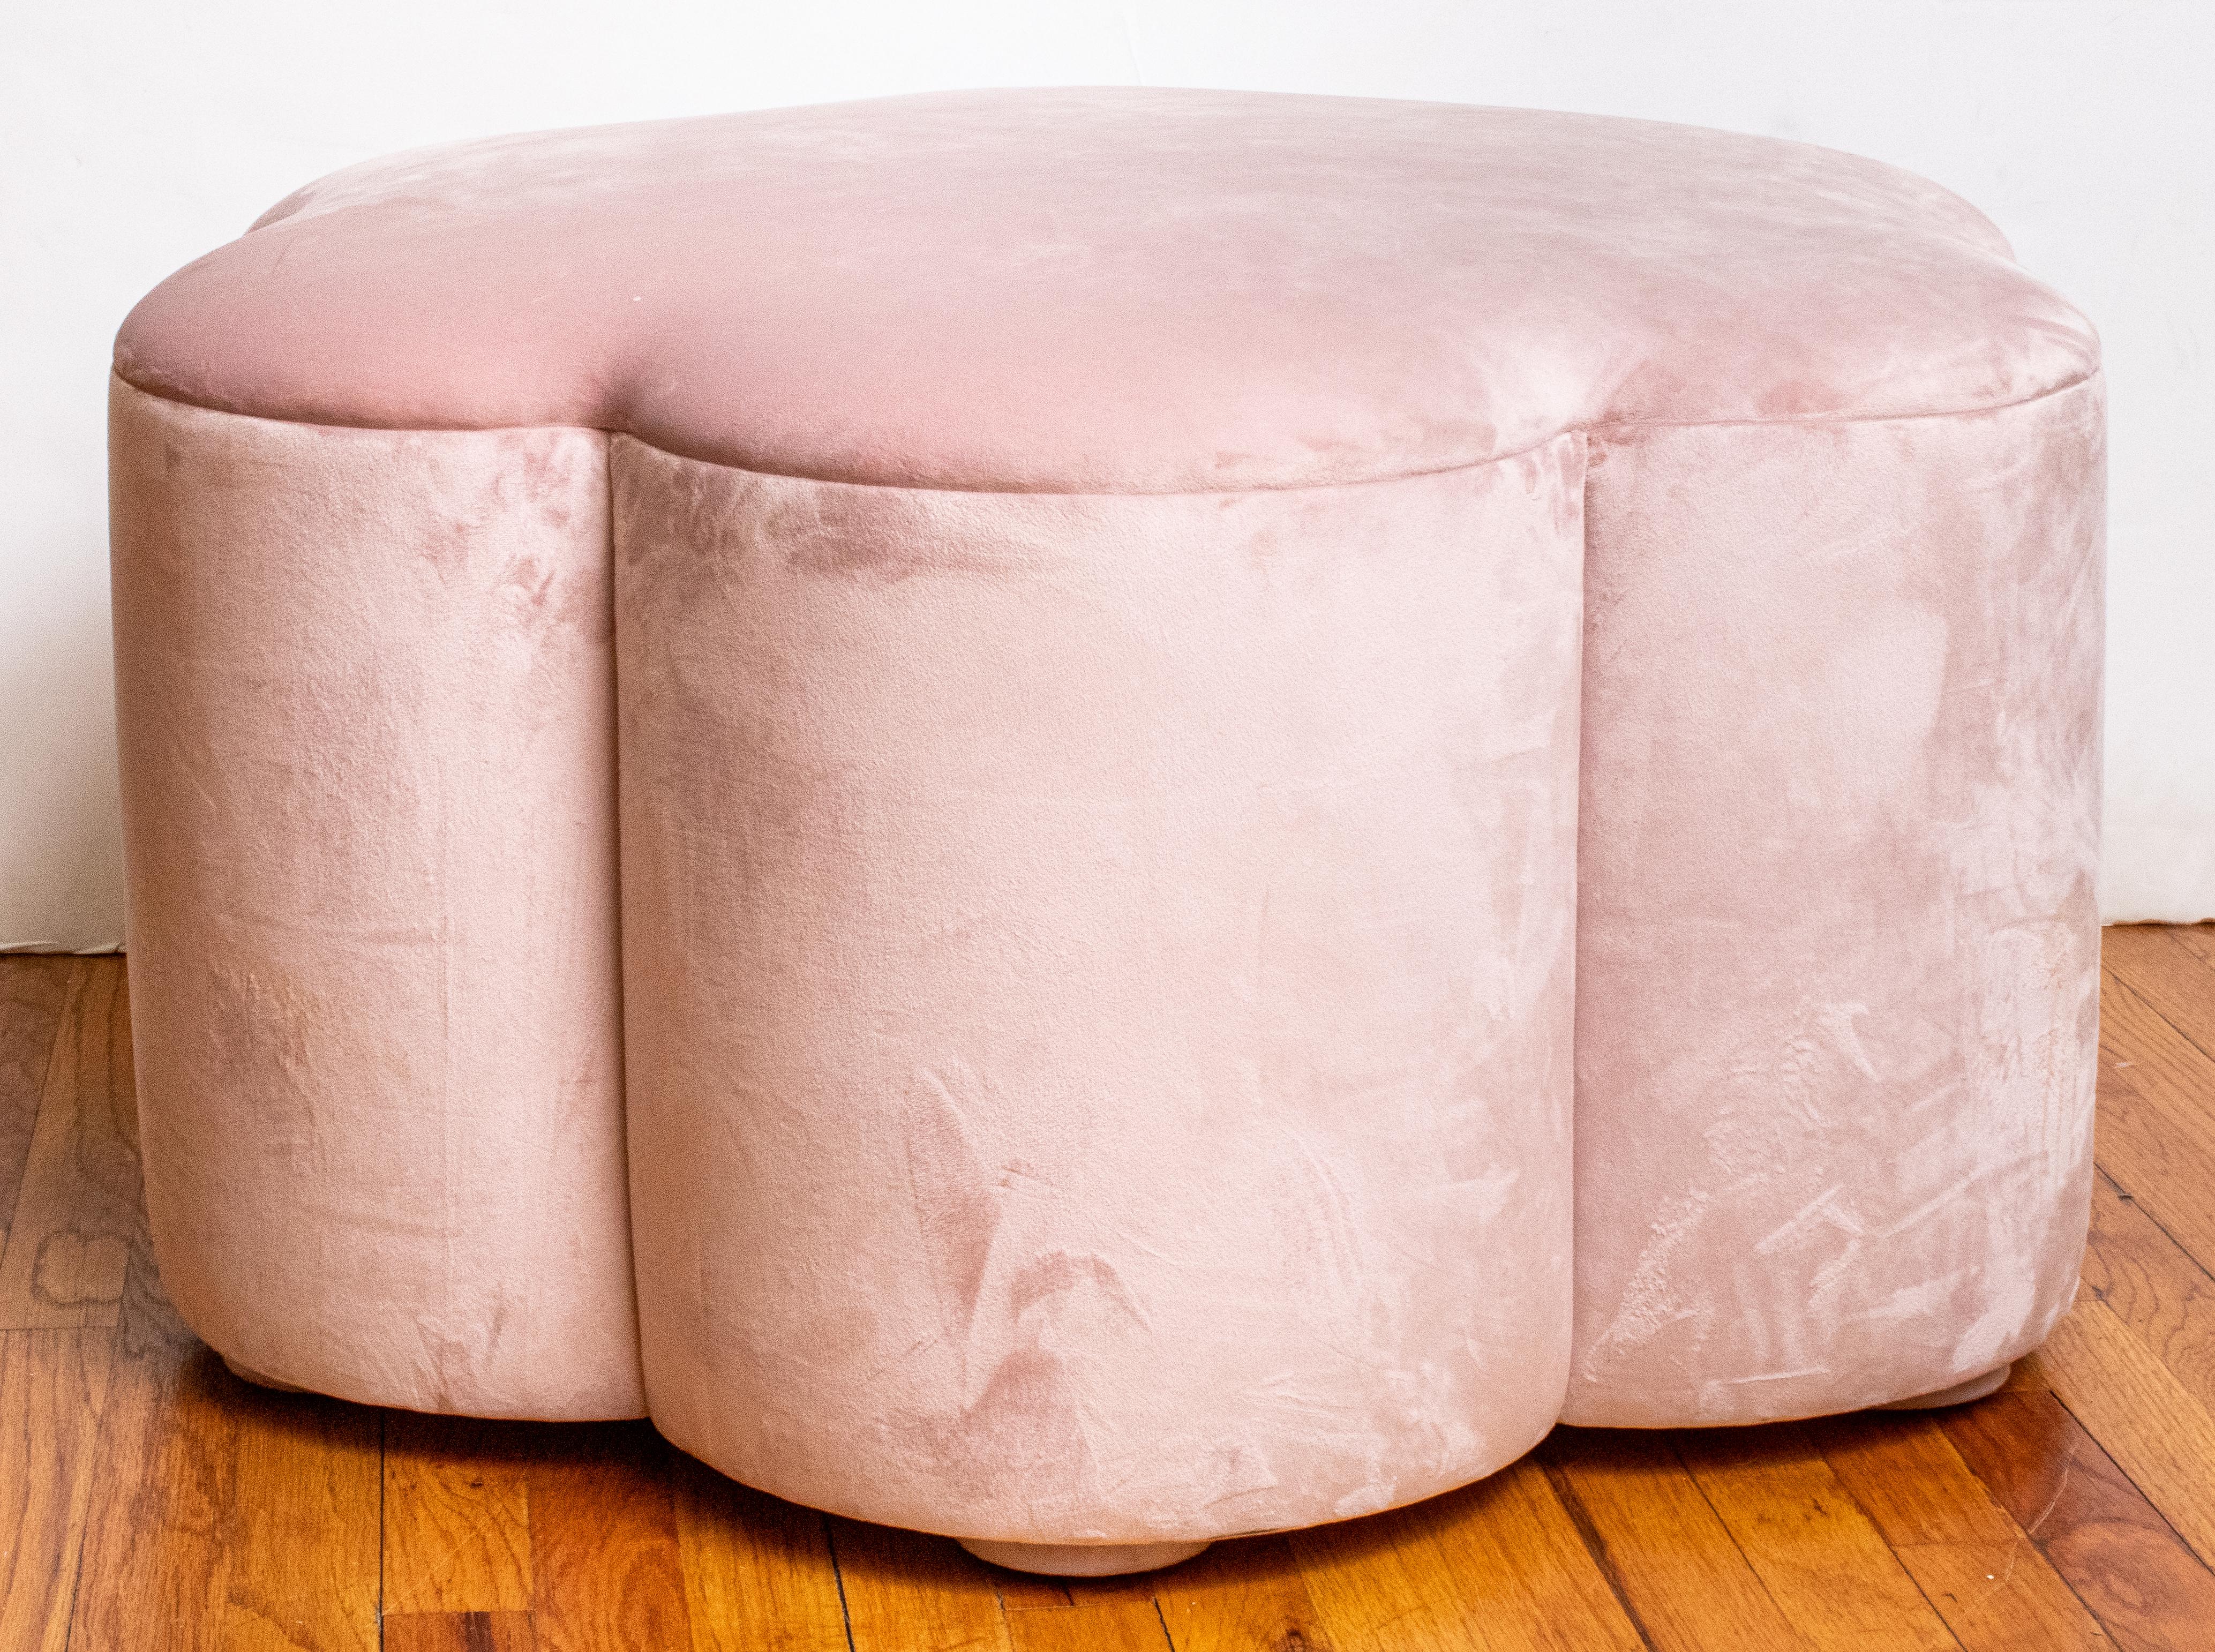 Pouf ottoman in light pink velvet upholstery.